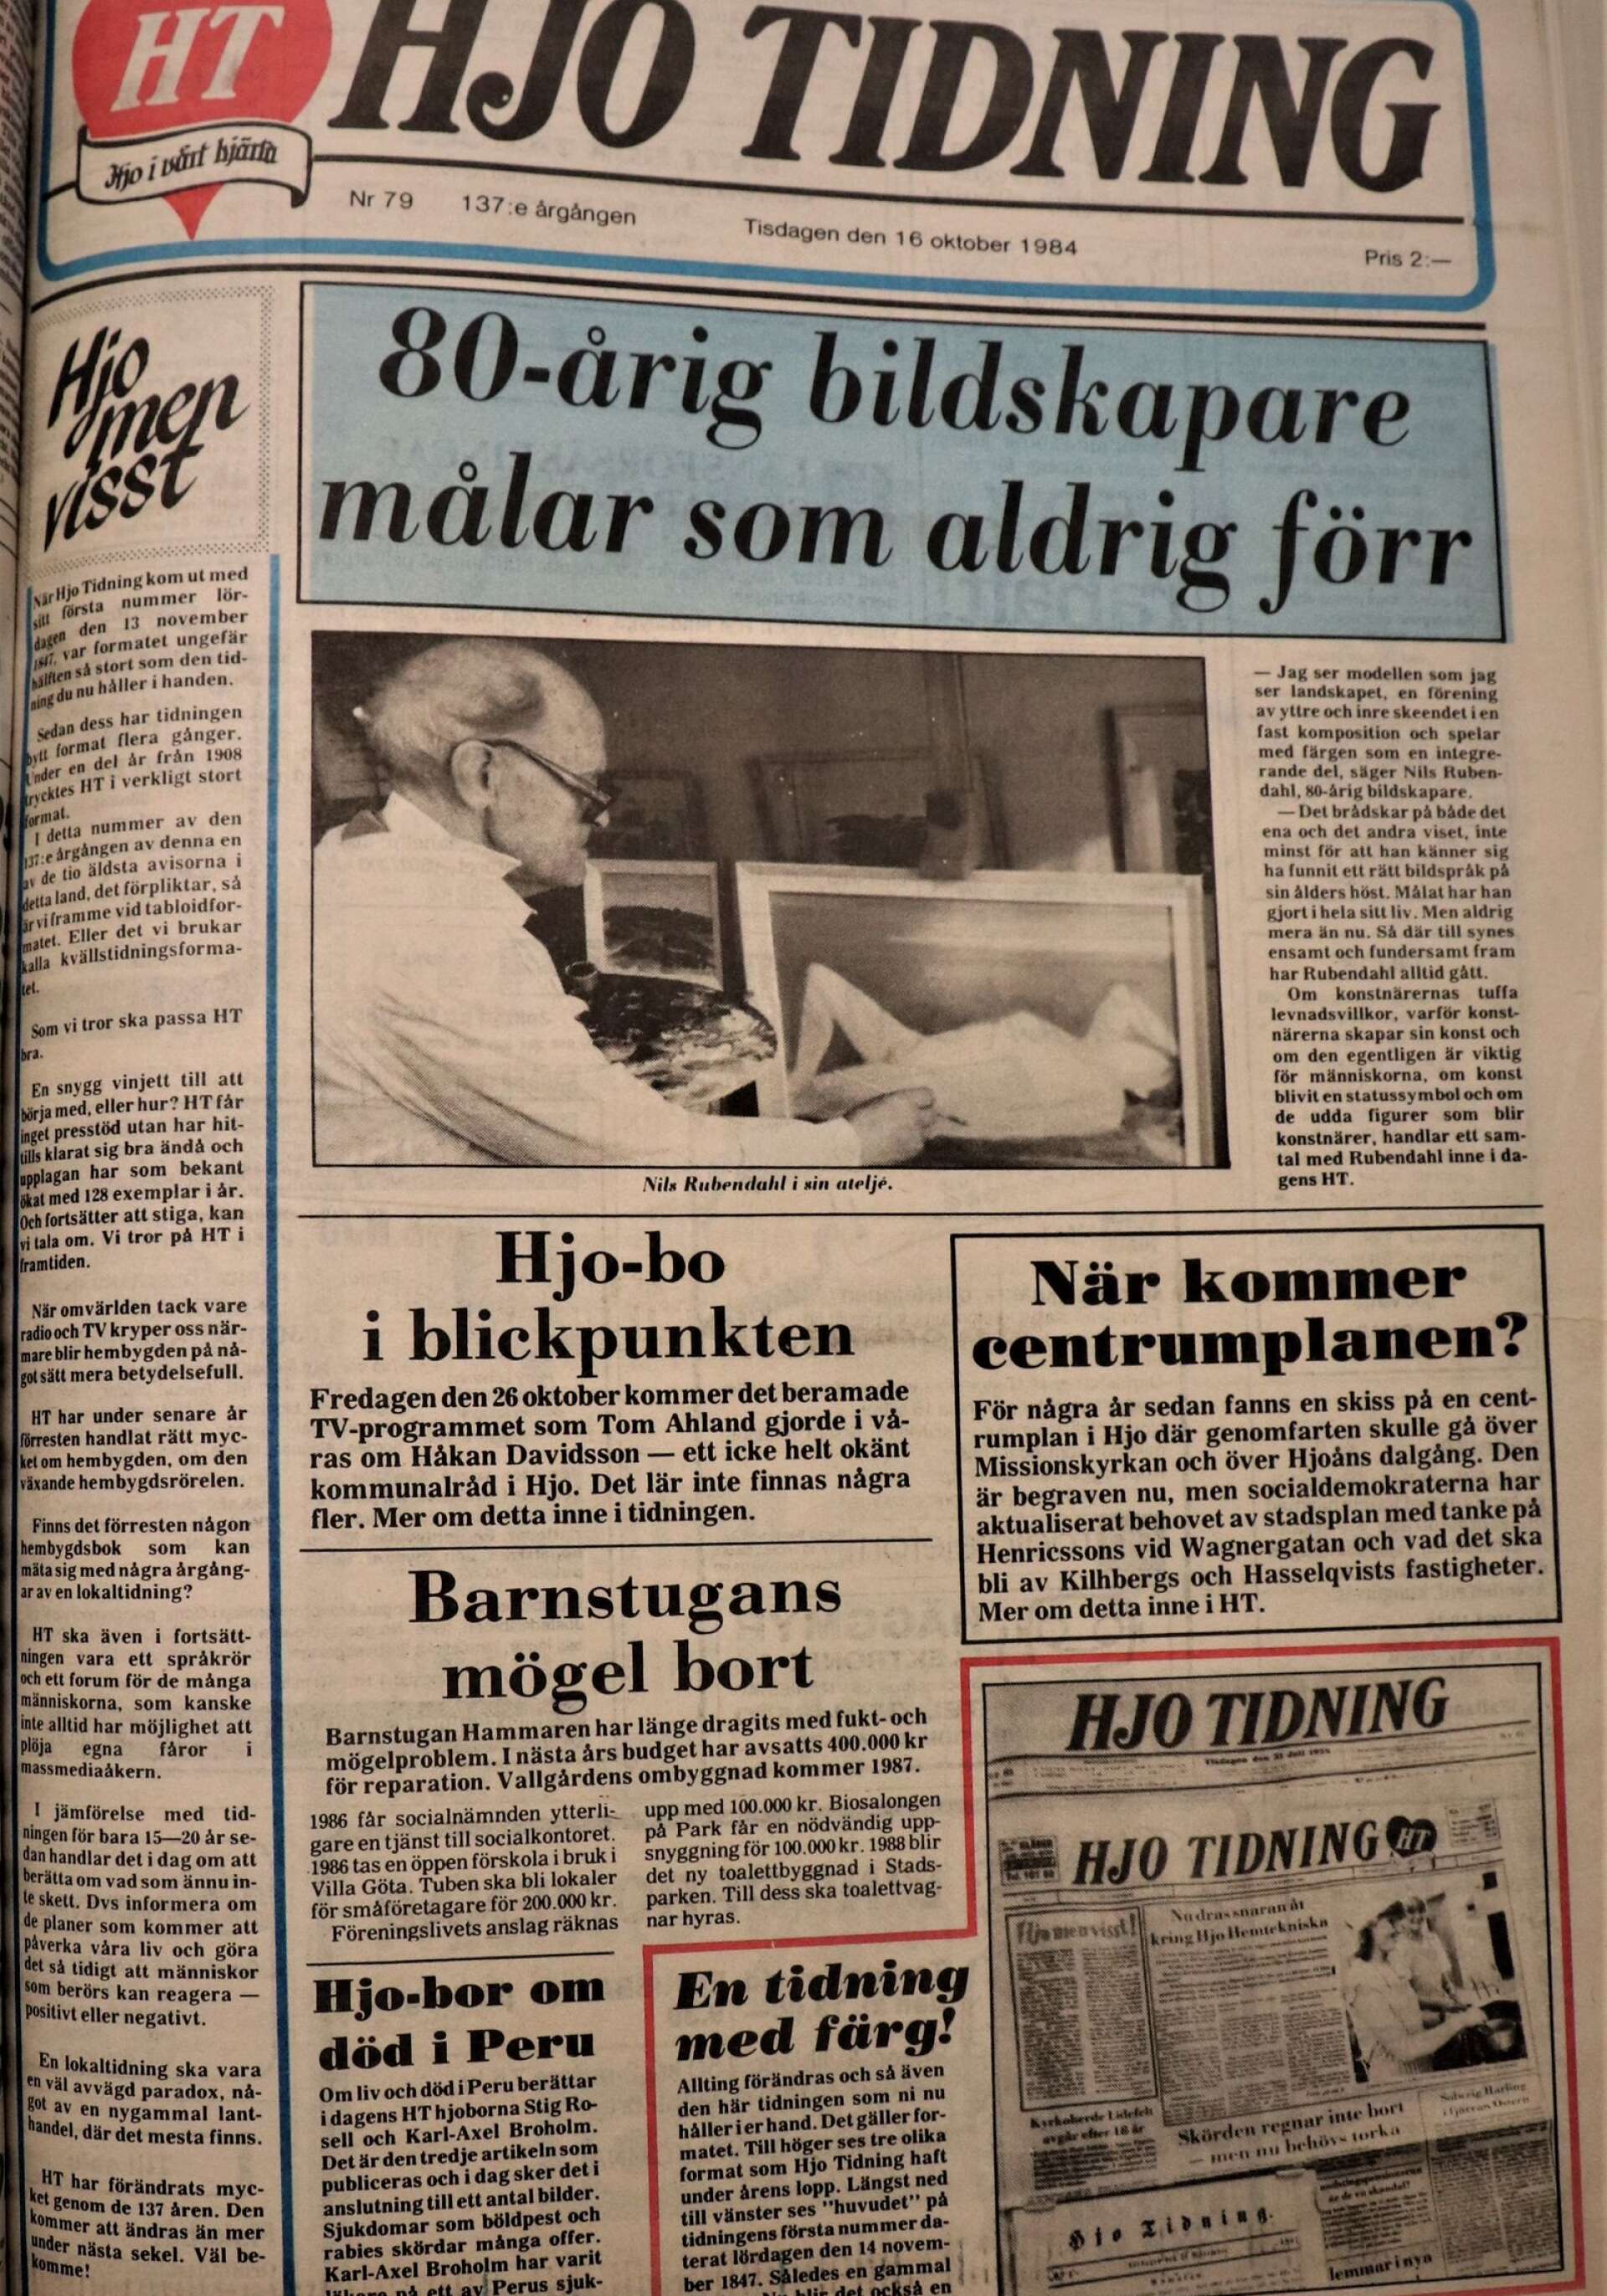 Tisdagen 16 oktober 1984 bytte Hjo Tidning format till tabloid. Tidningen blev hälften så stor och fick färg på vissa sidor.